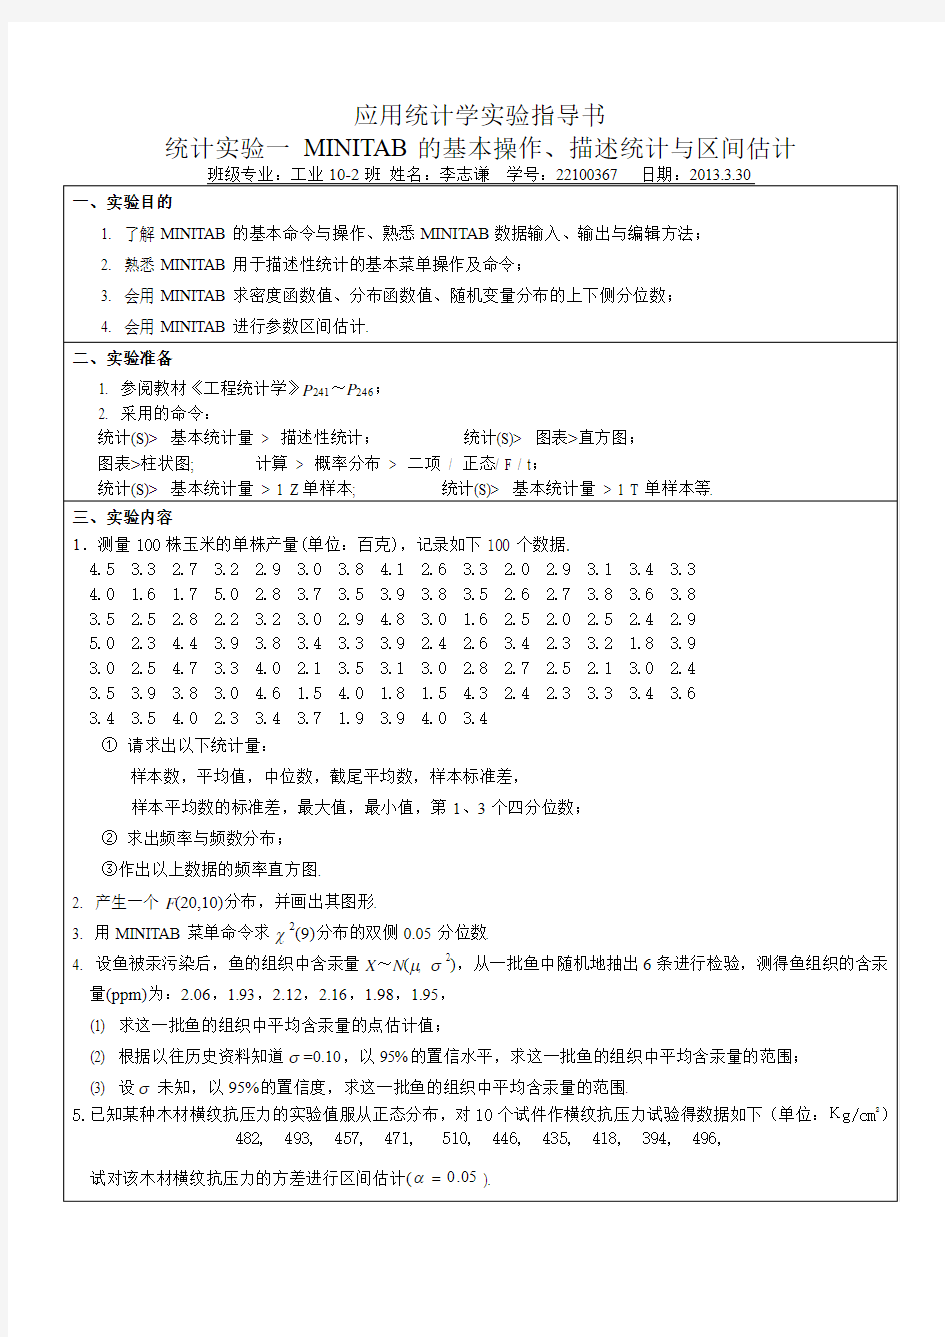 中国矿业大学应用统计学实验报告